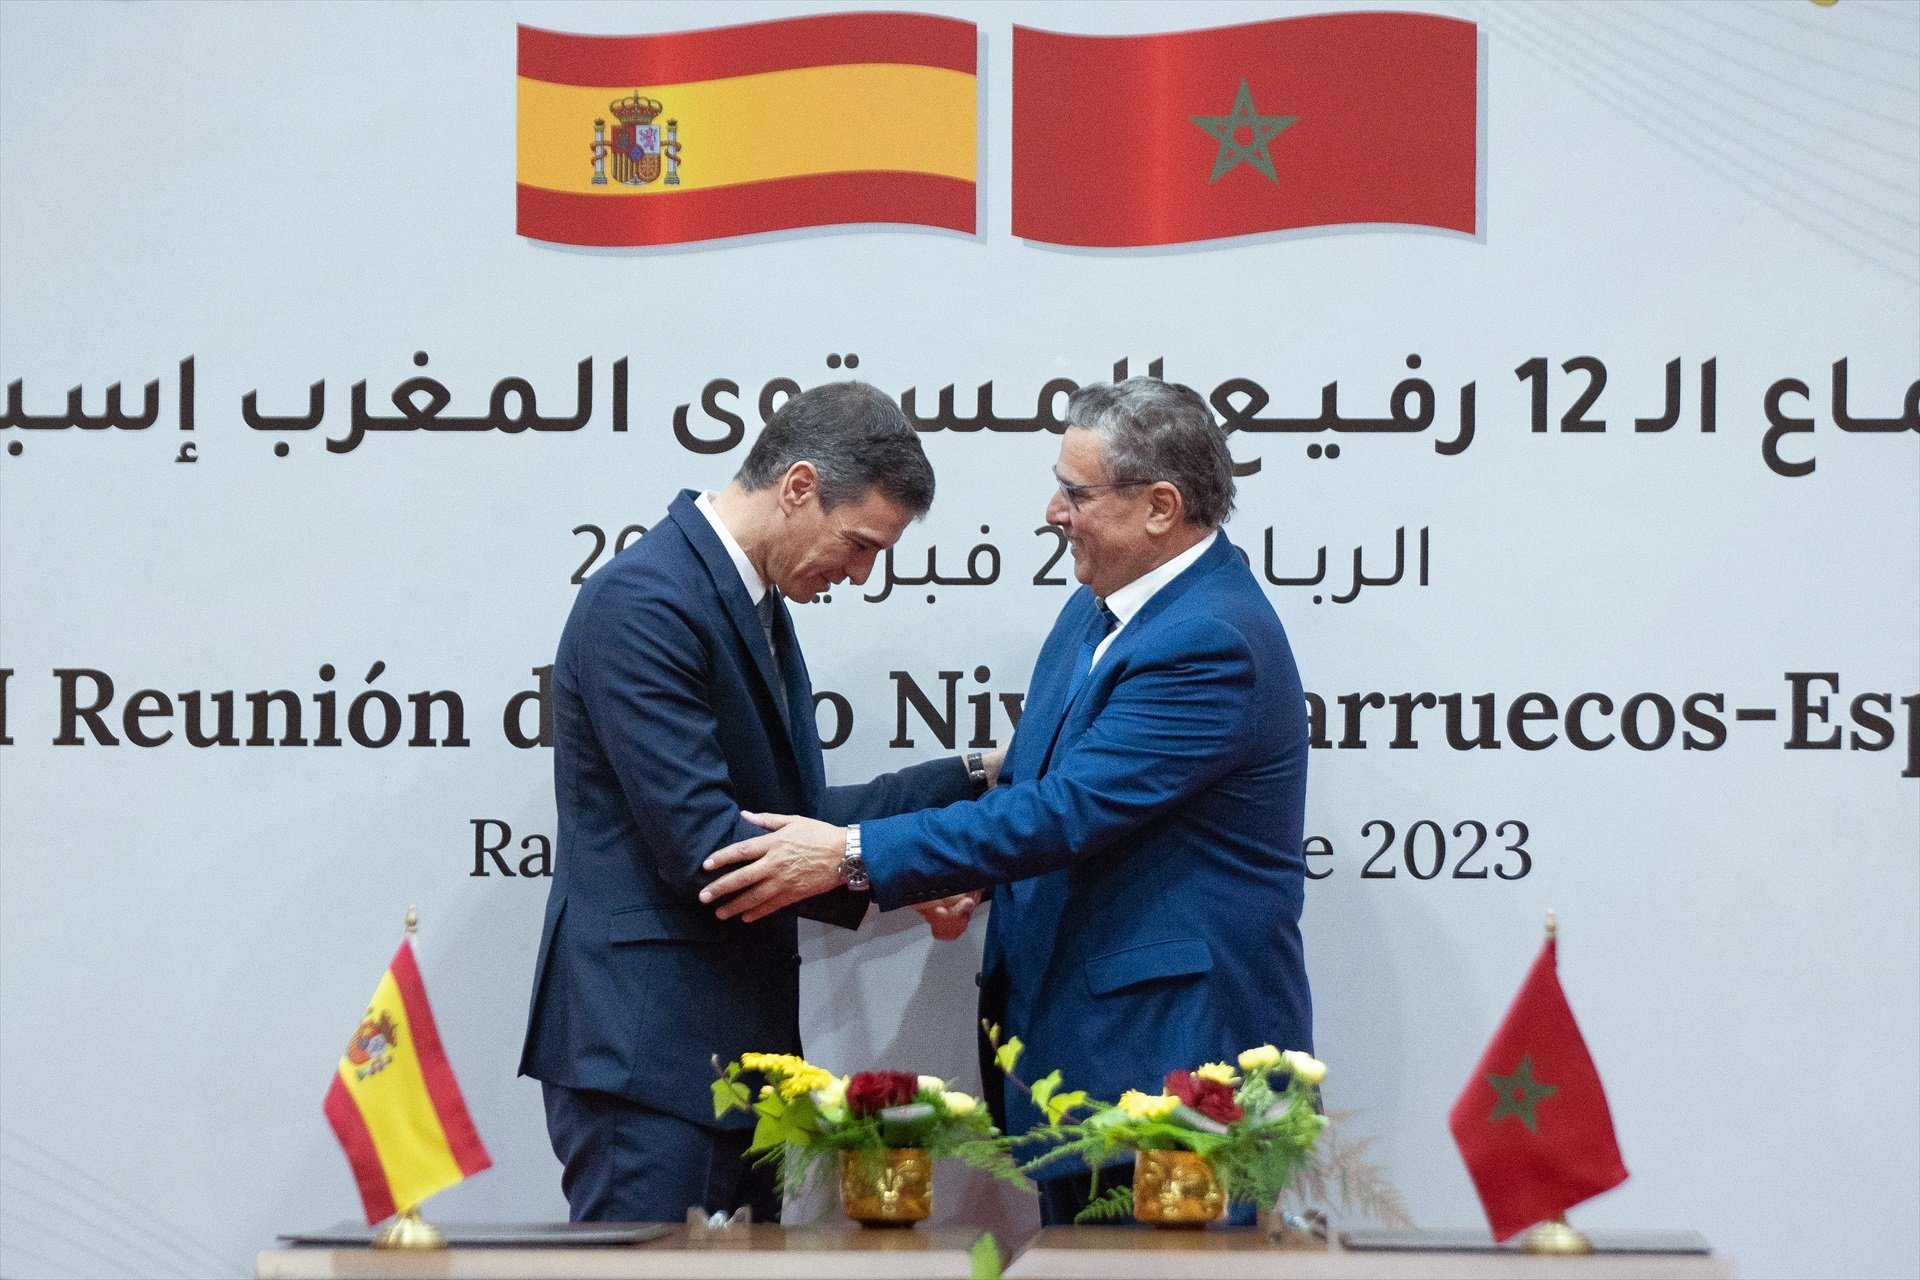 España se queja a Marruecos por haber dicho que Ceuta y Melilla son marroquíes